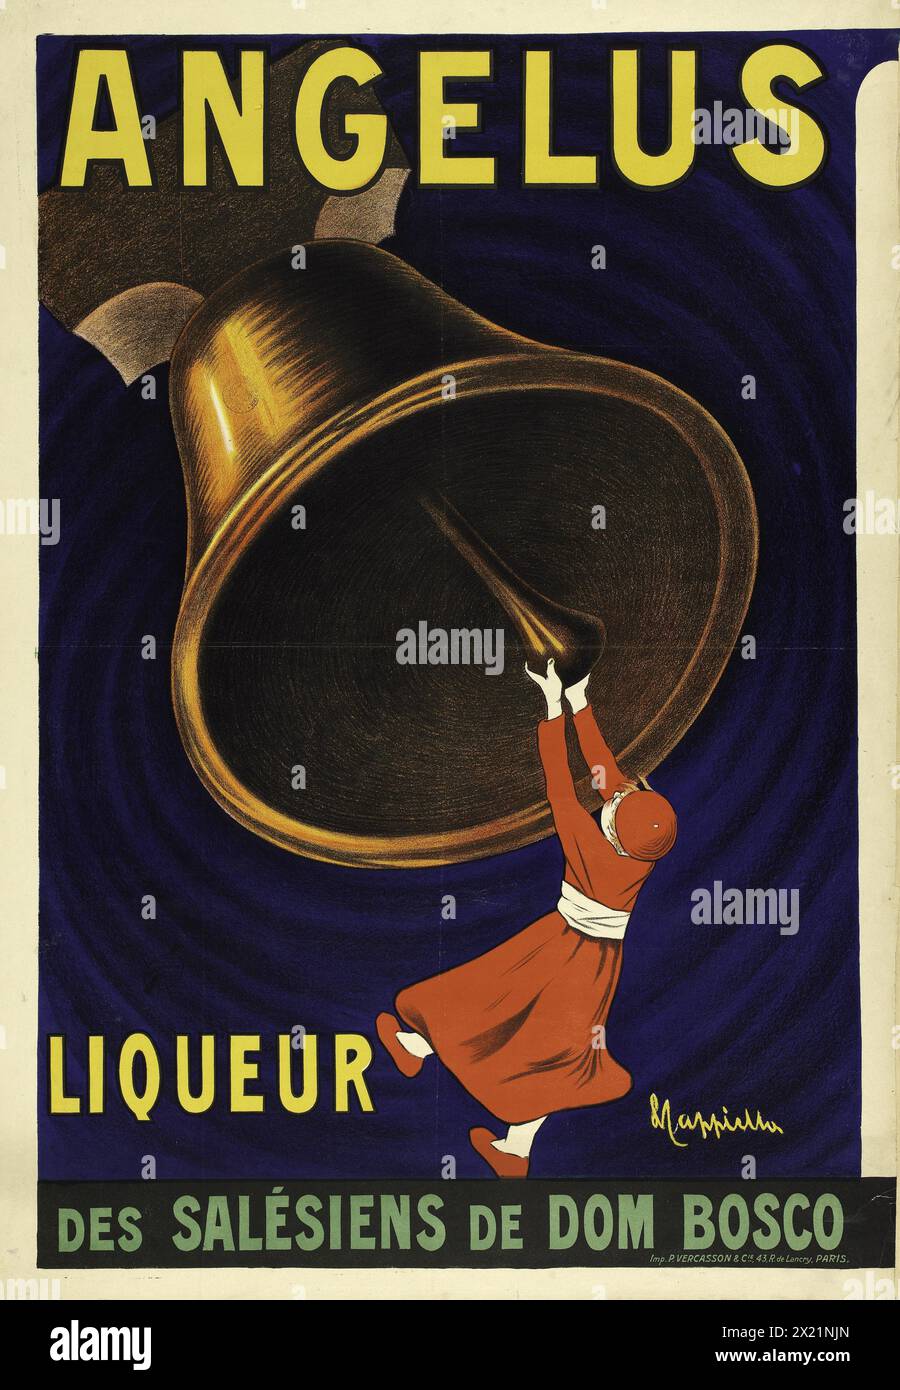 Angelus, liqueur des Salésiens de Dom Bosco - affiche vintage Leonetto Cappiello, 1911 - publicité pour alcool vintage. Banque D'Images